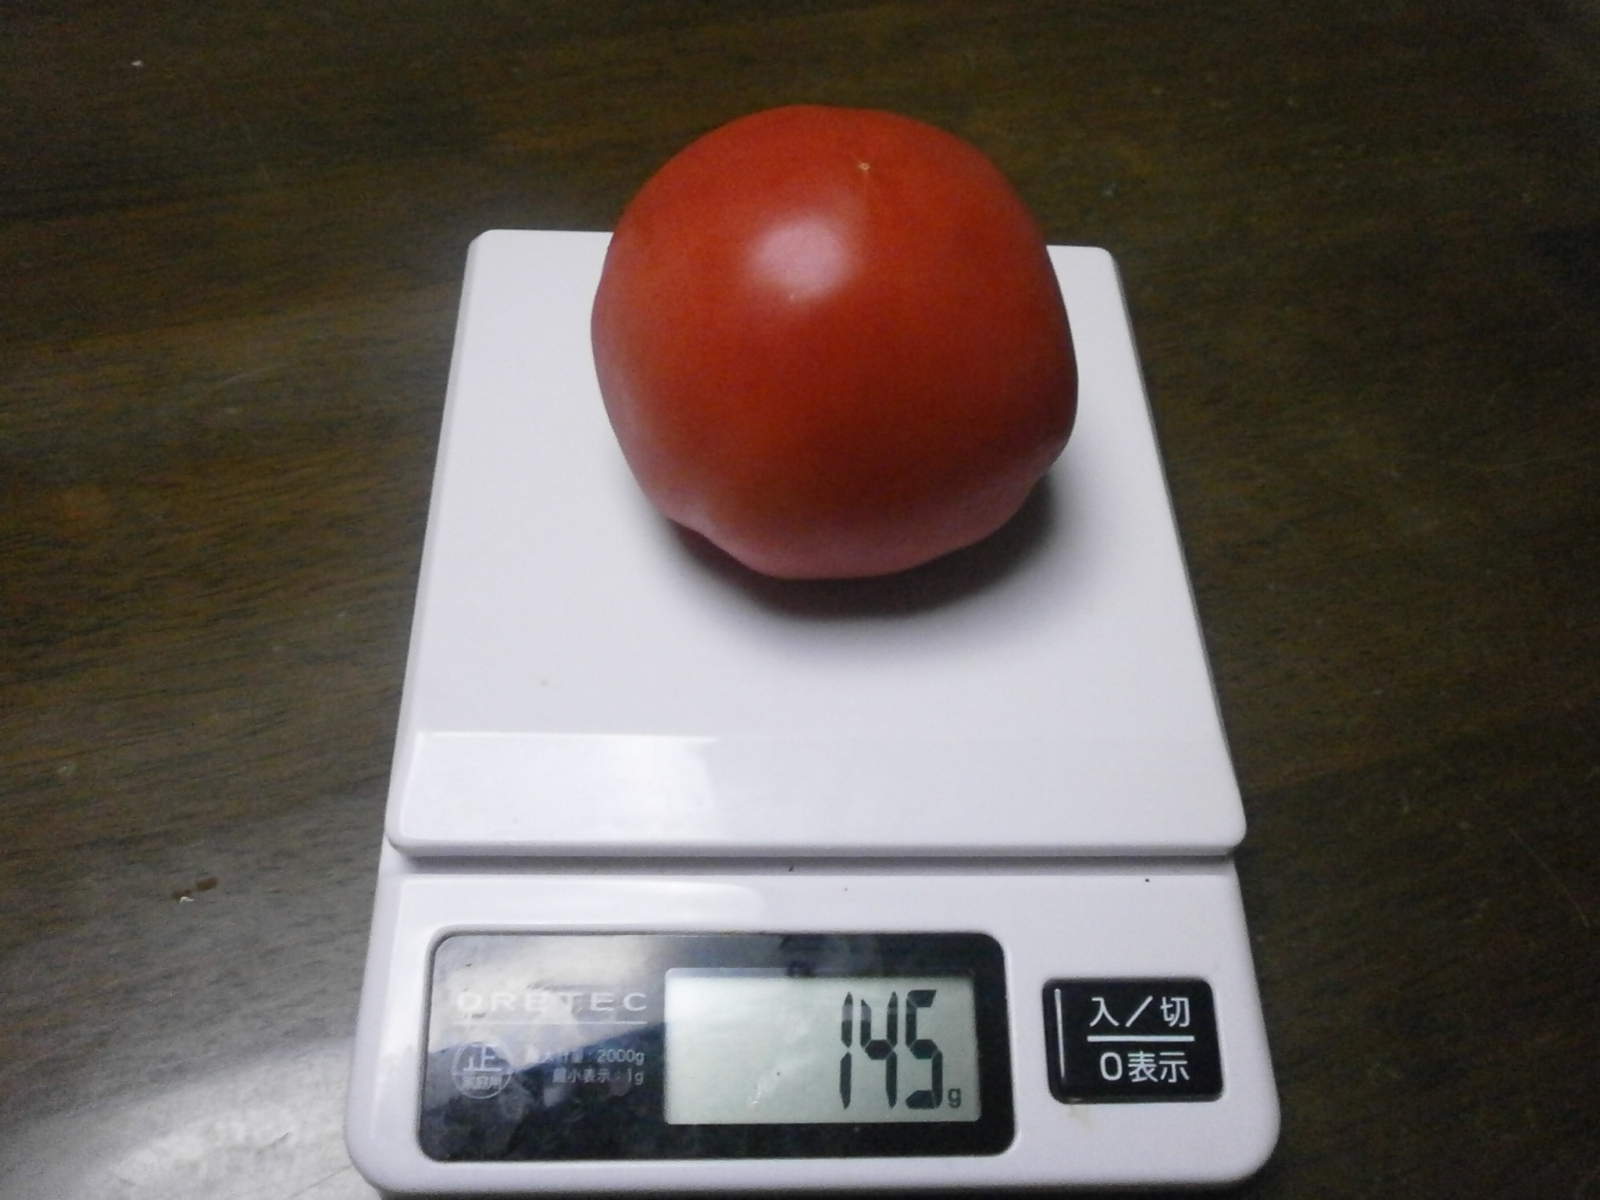 Tomato (161g/145g)